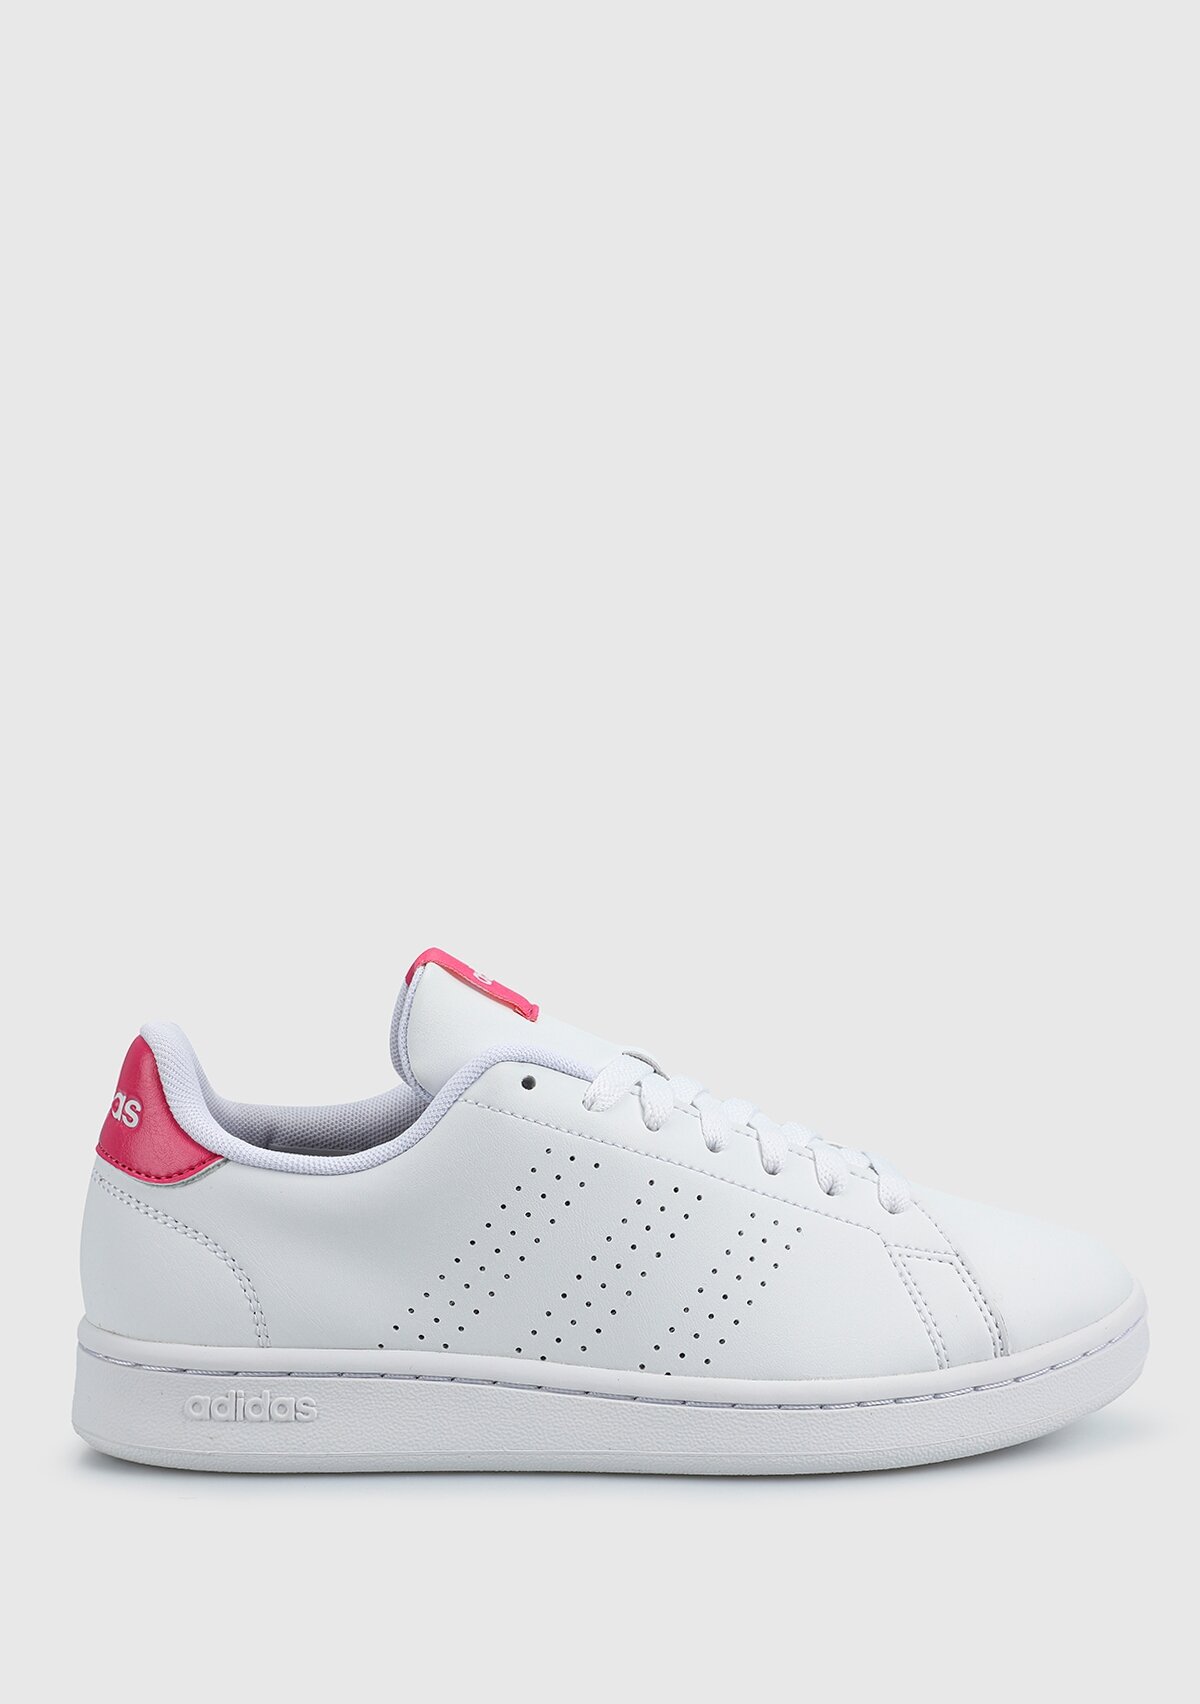 adidas Advantage beyaz kadın tenis Ayakkabısı ıf5406